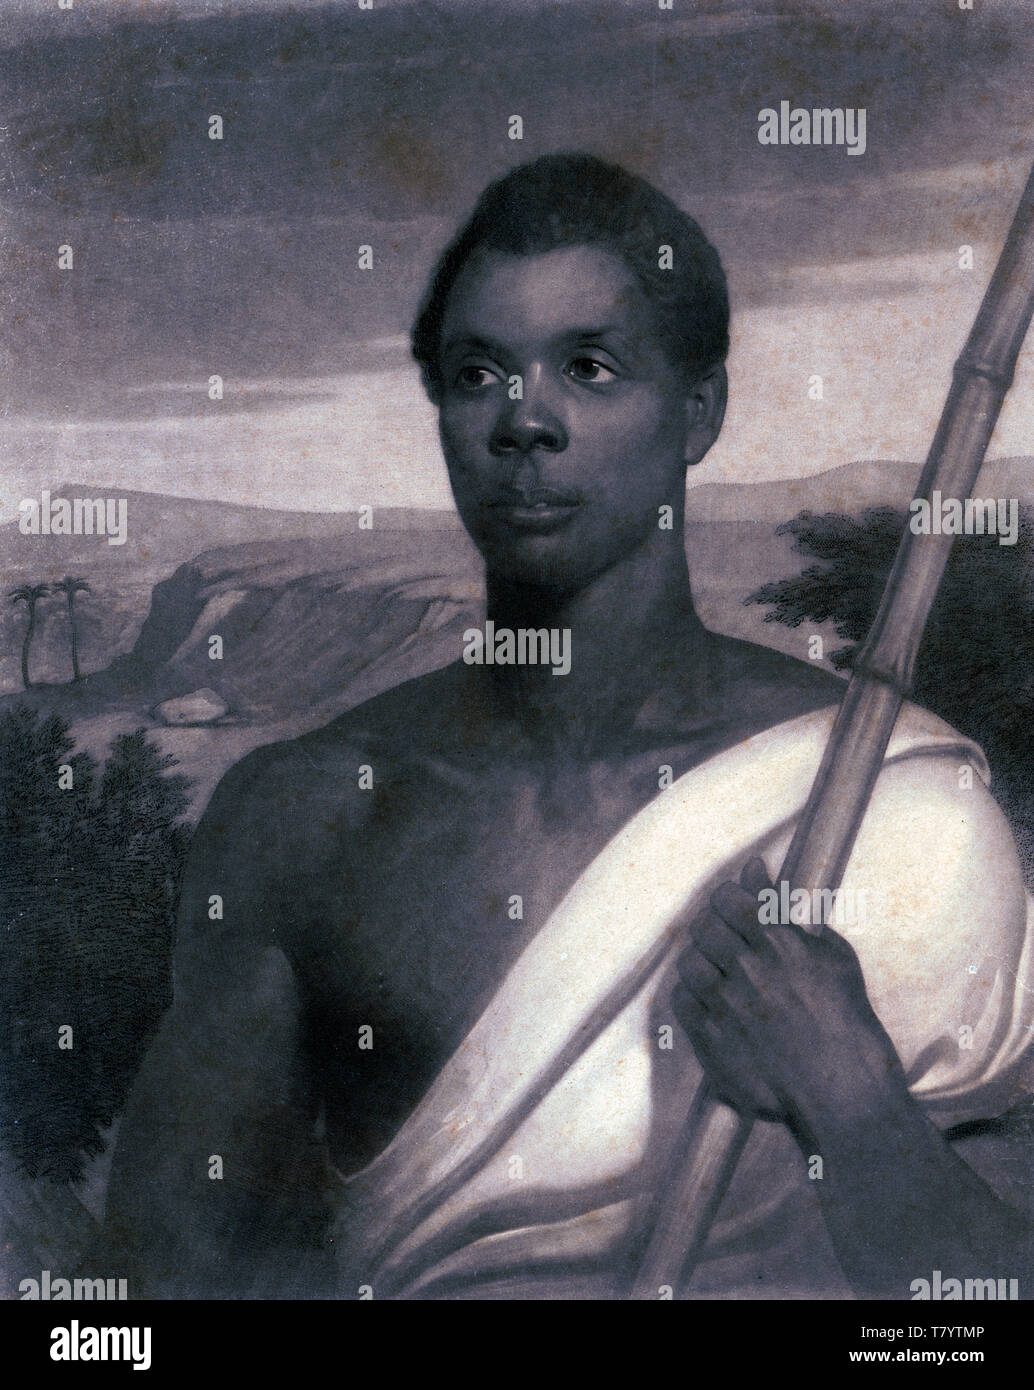 Joseph CinquÃ©, líder de la rebelión de esclavos Amistad Foto de stock